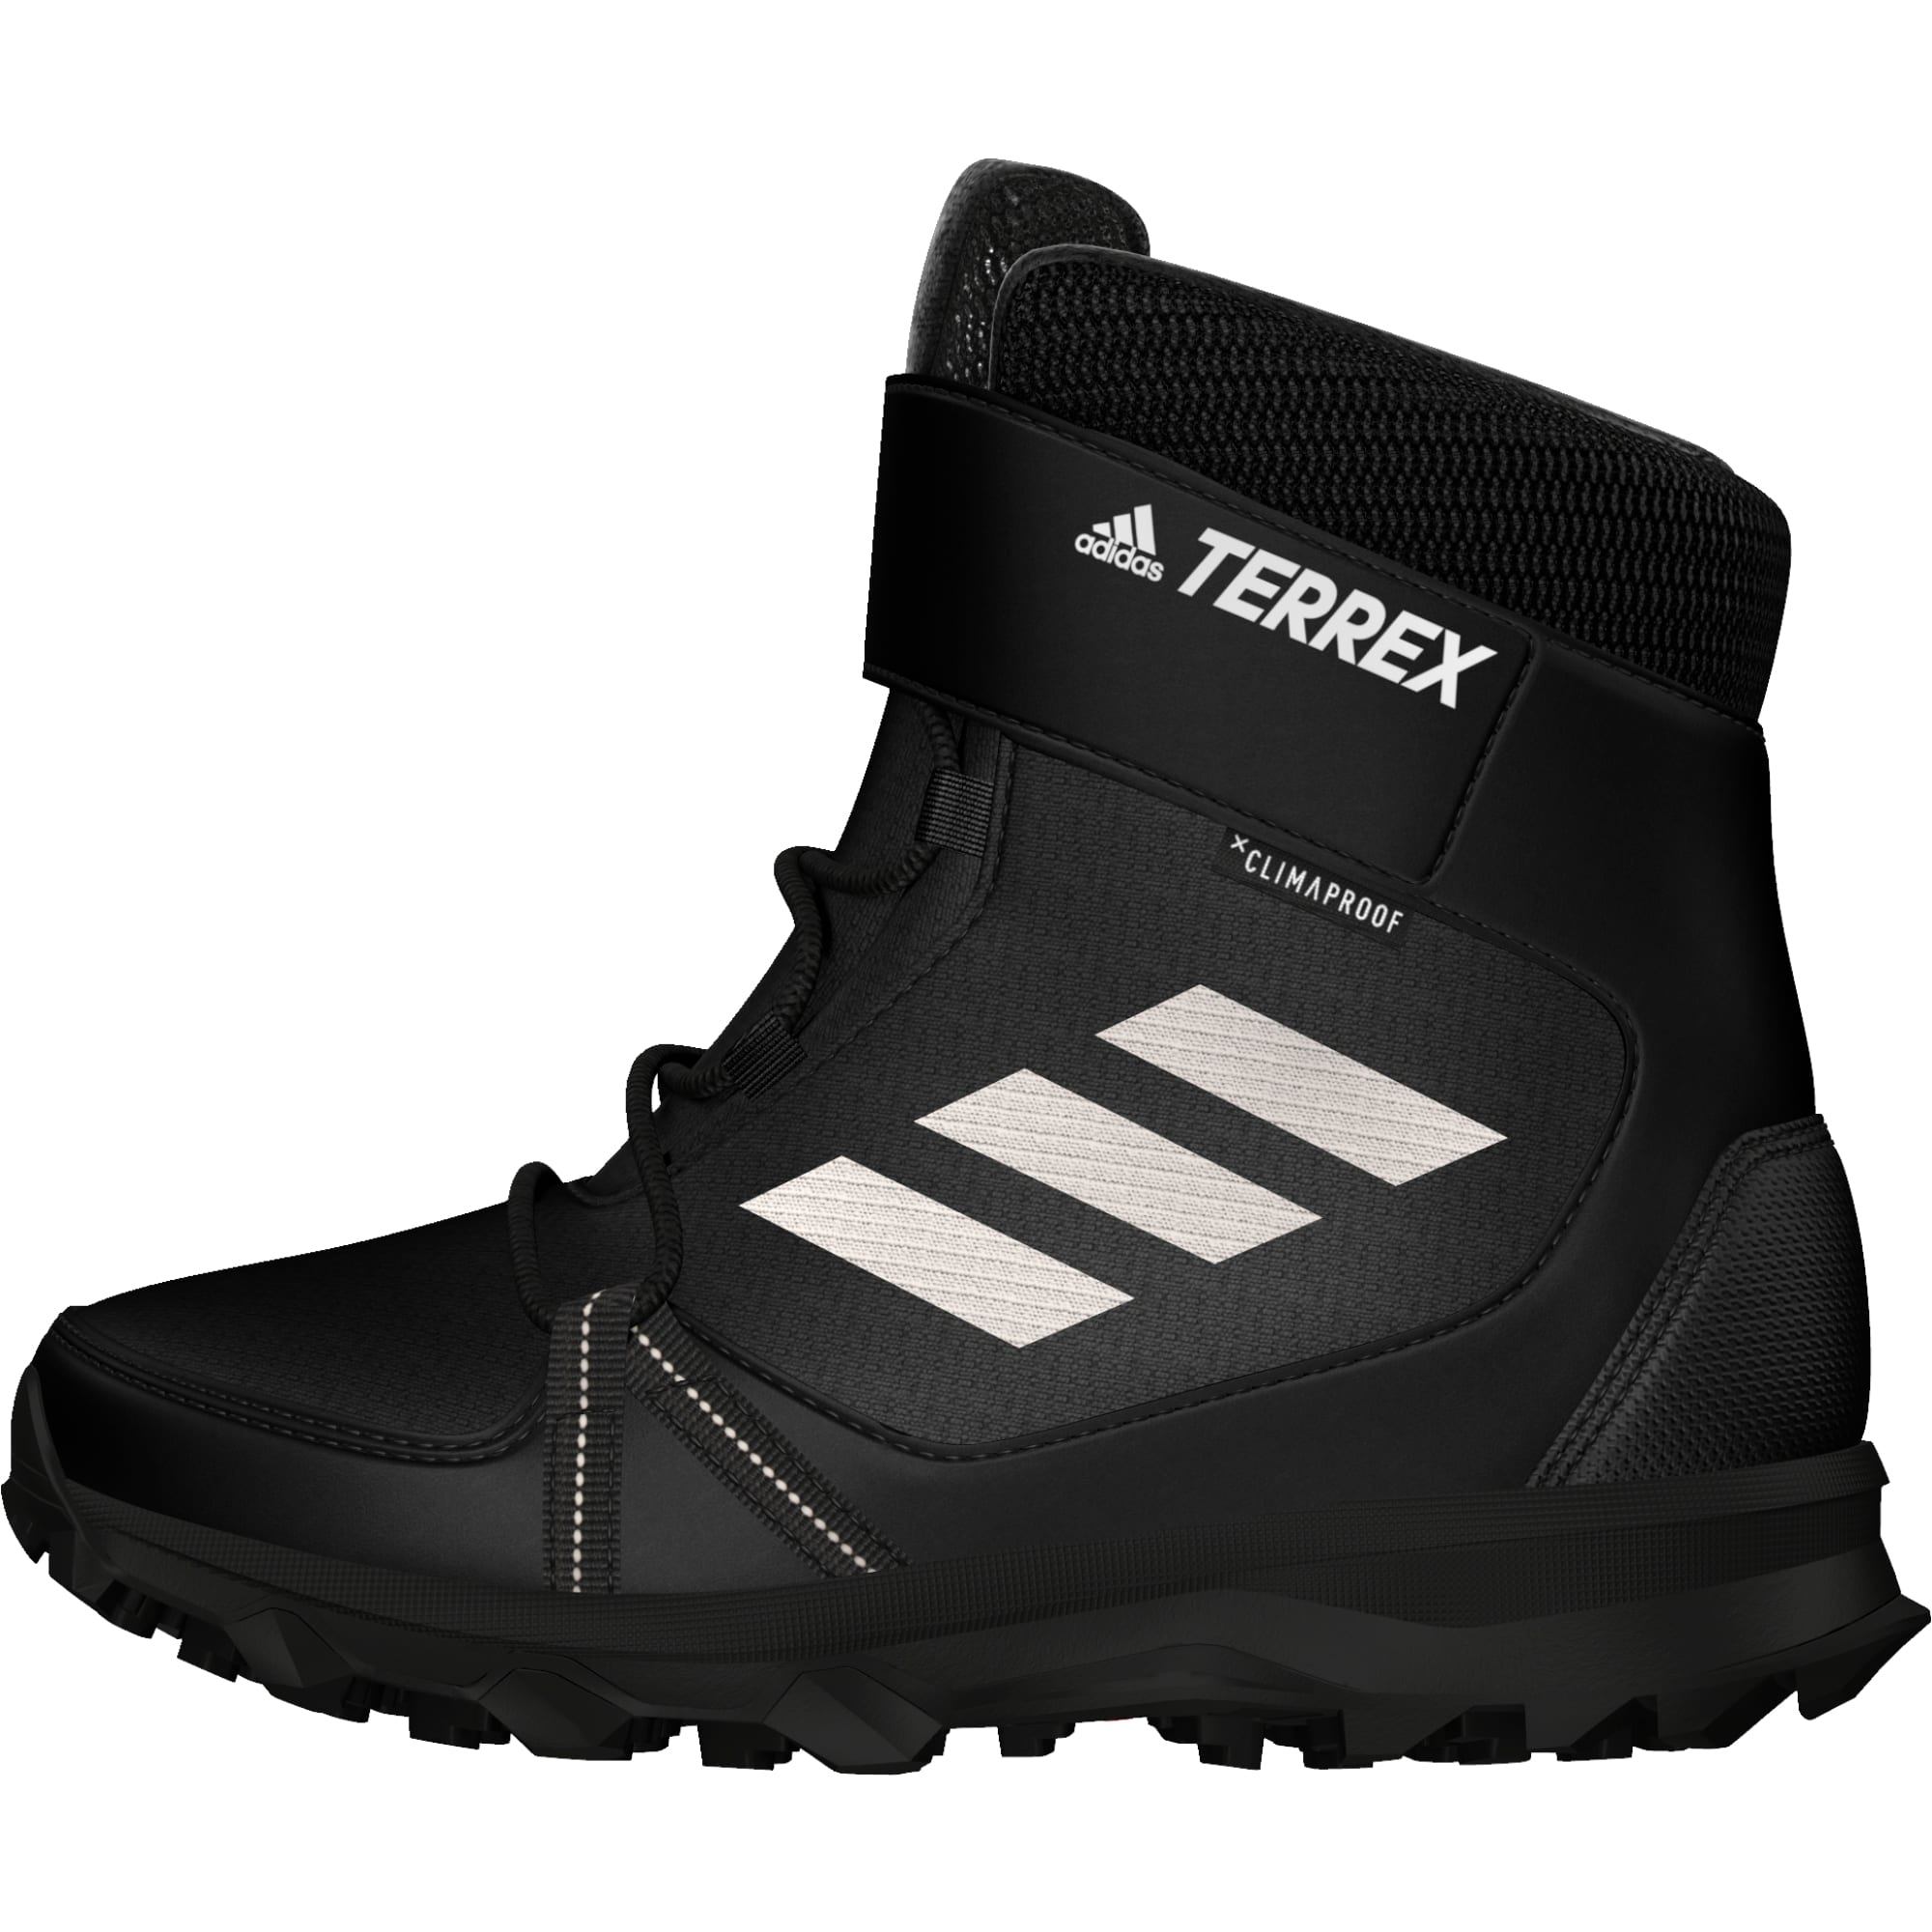 Buy > terrex snow cf cp cw shoes > in stock